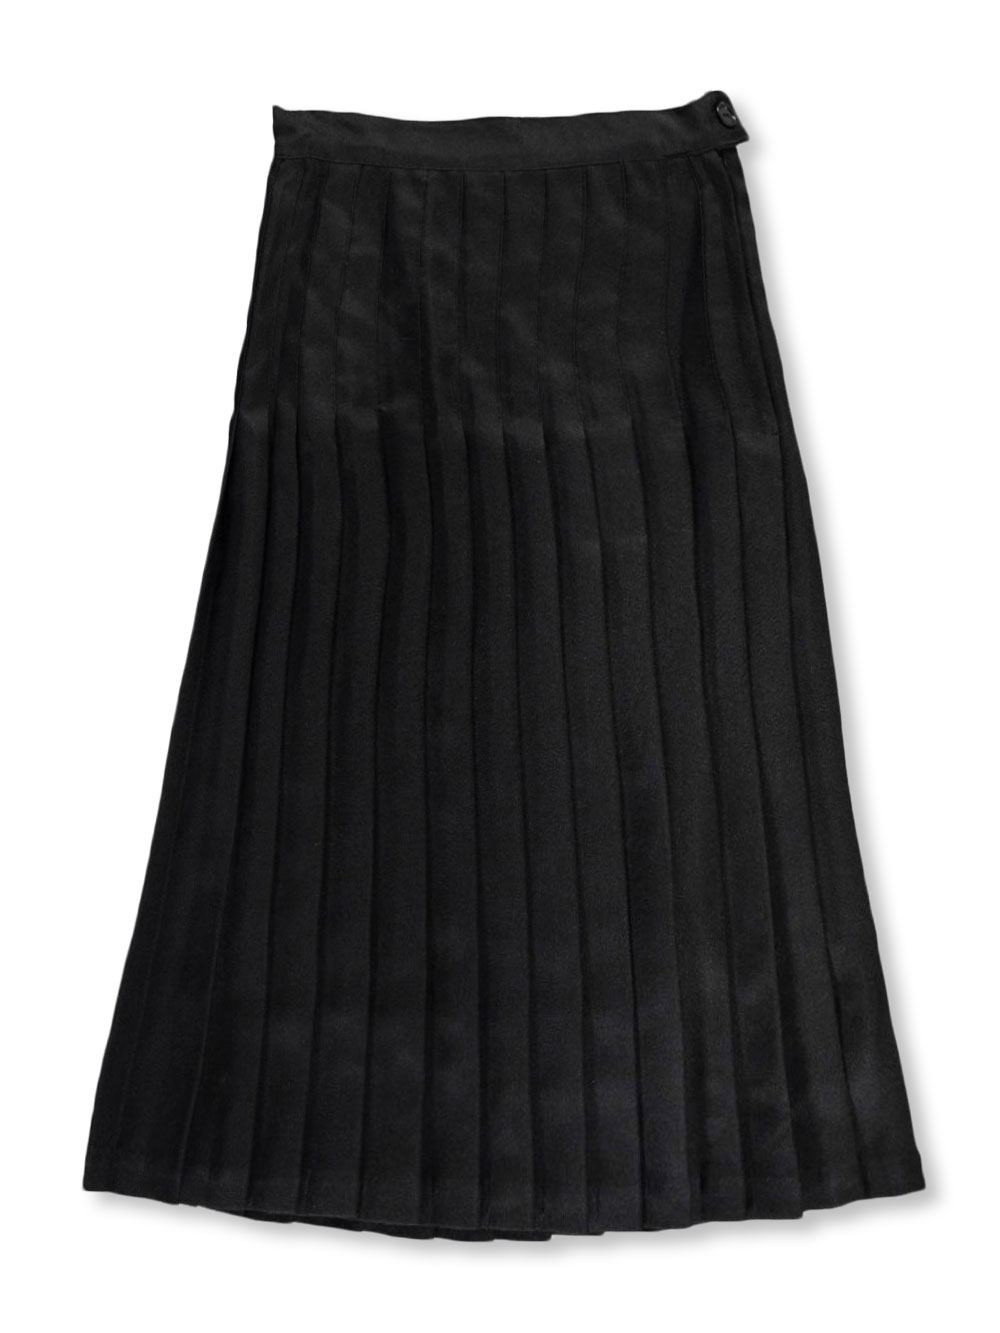 adam& eesa Girls Ladies School Drop Waisted Pleated Skirt Formal in Black Grey & Navy